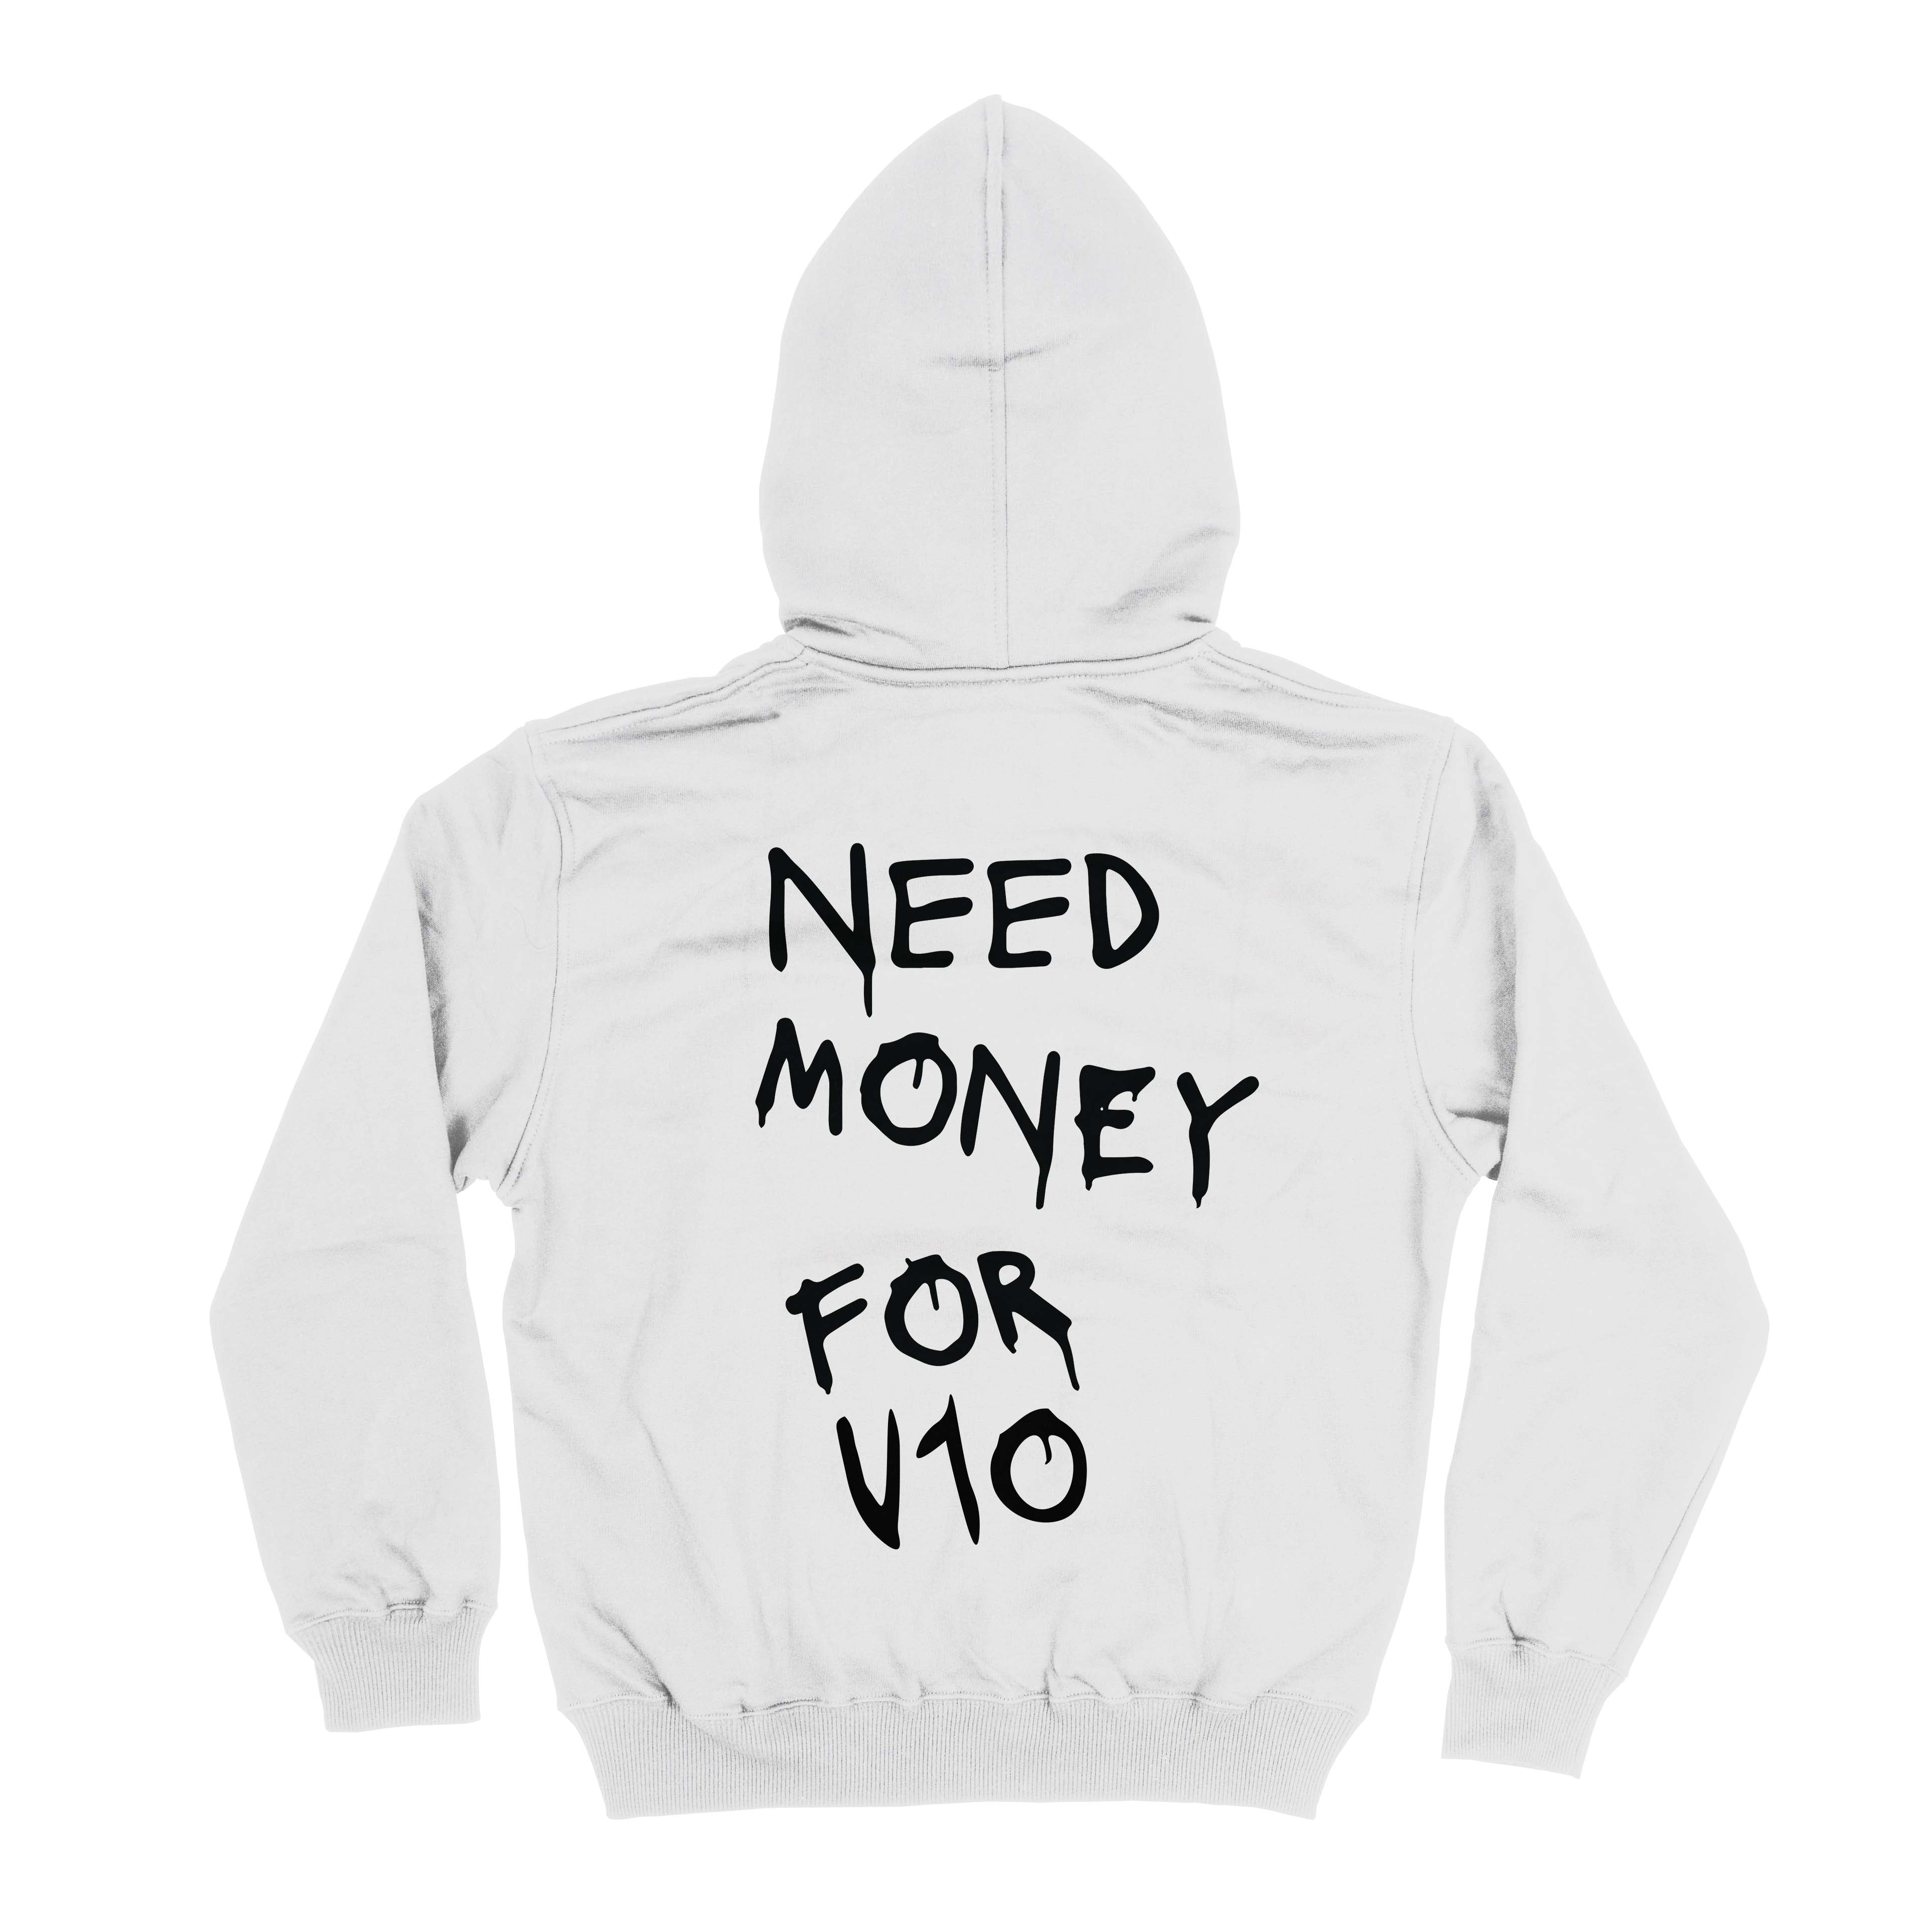 Need money for V10